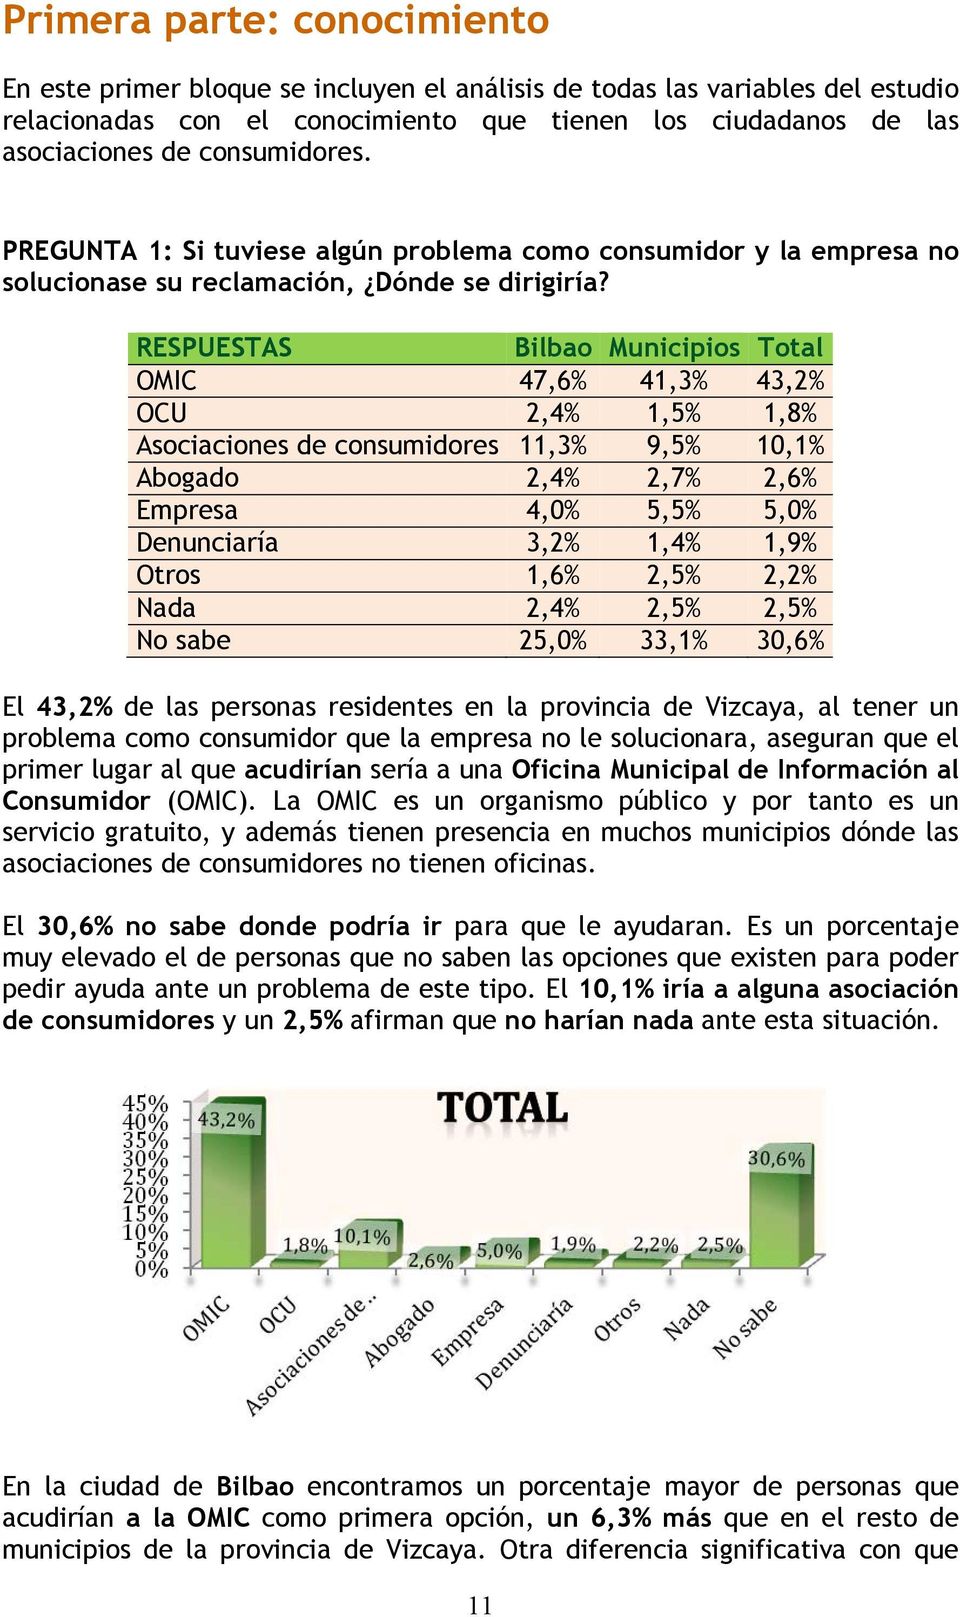 RESPUESTAS Bilbao Municipios Total OMIC 47,6% 41,3% 43,2% OCU 2,4% 1,5% 1,8% Asociaciones de consumidores 11,3% 9,5% 10,1% Abogado 2,4% 2,7% 2,6% Empresa 4,0% 5,5% 5,0% Denunciaría 3,2% 1,4% 1,9%